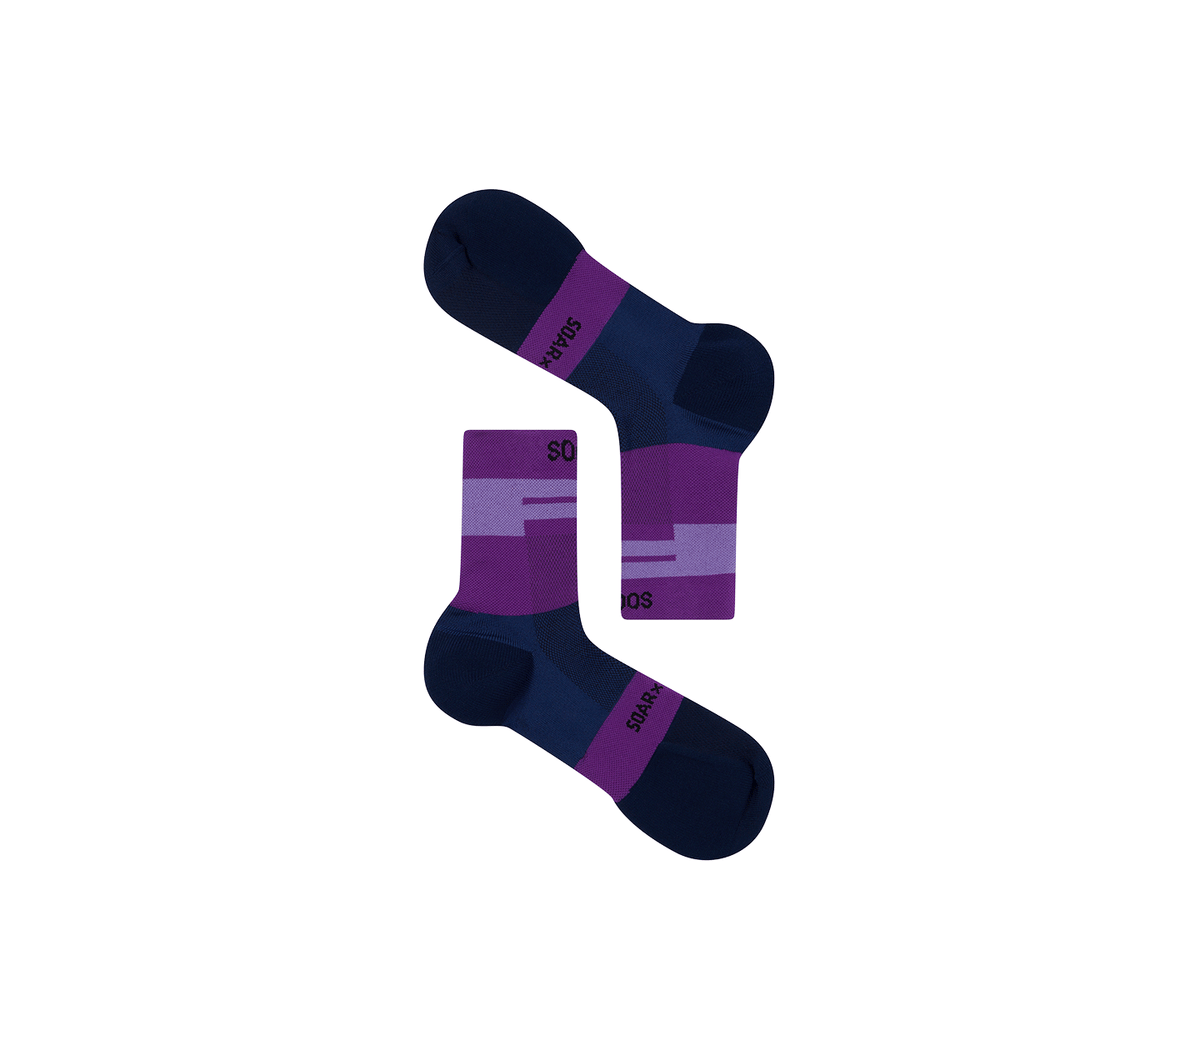 踝襪 |紫色的